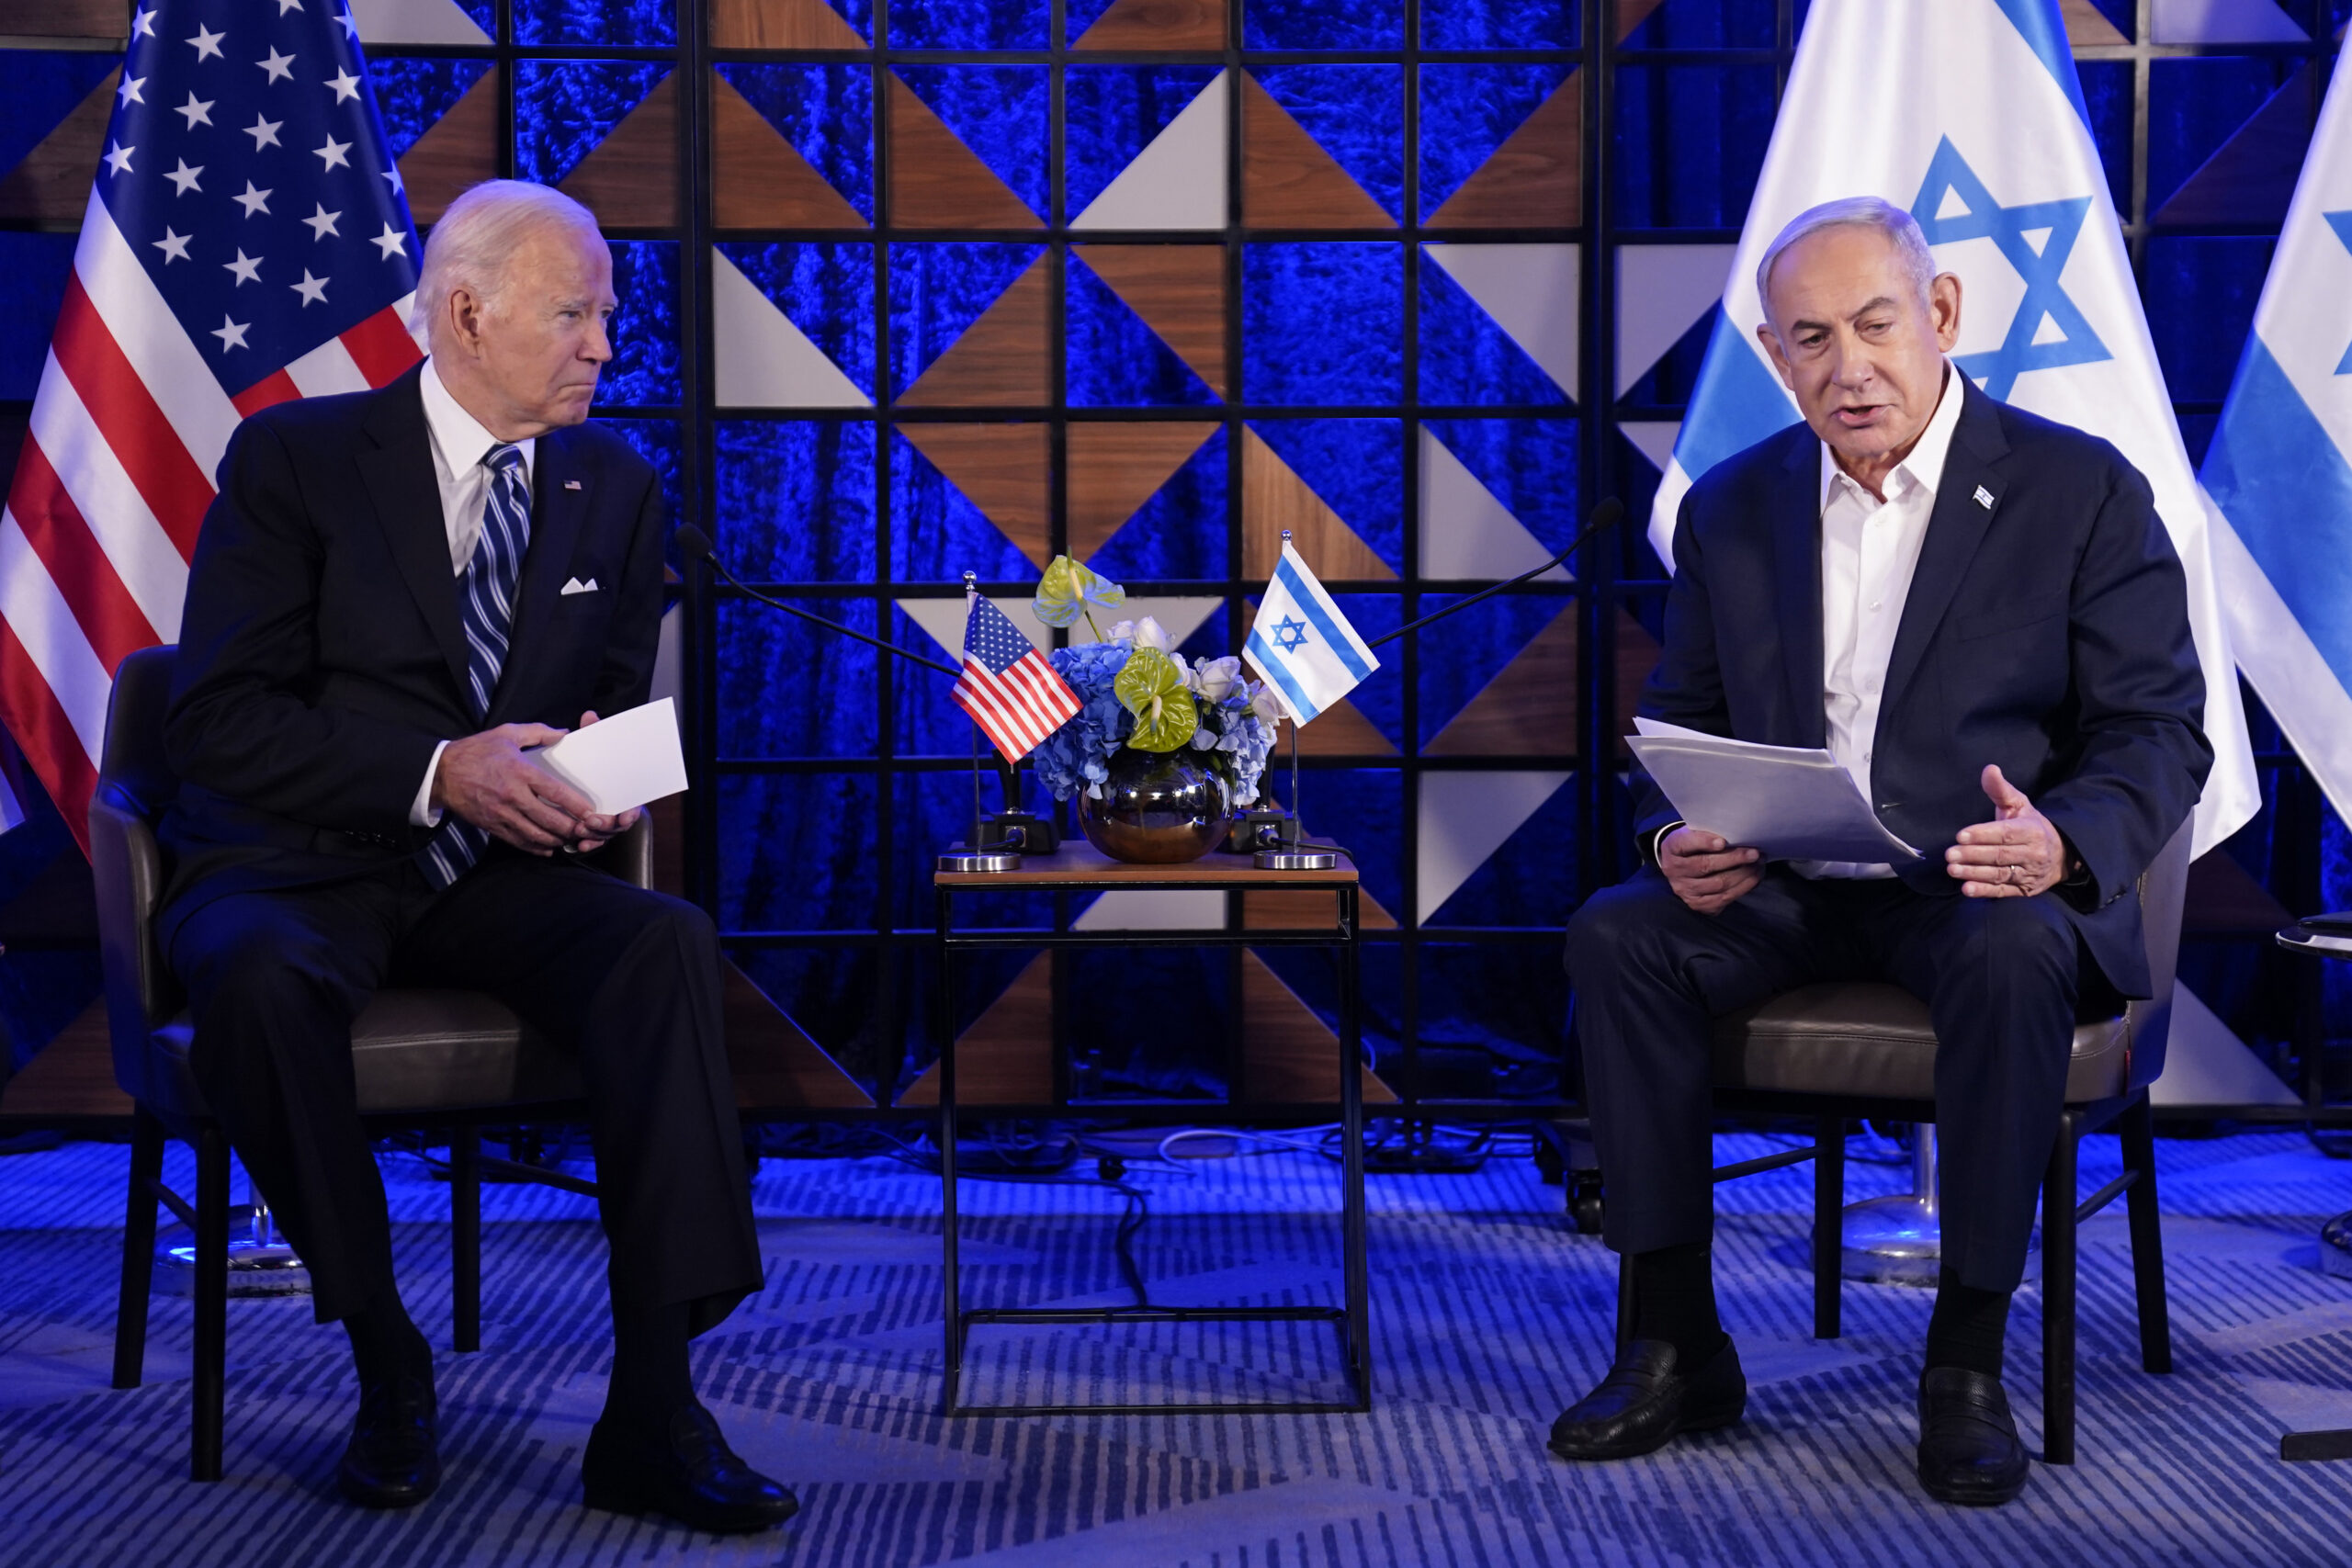 Biden and Obama ‘Enemies of Israel’ [Video]